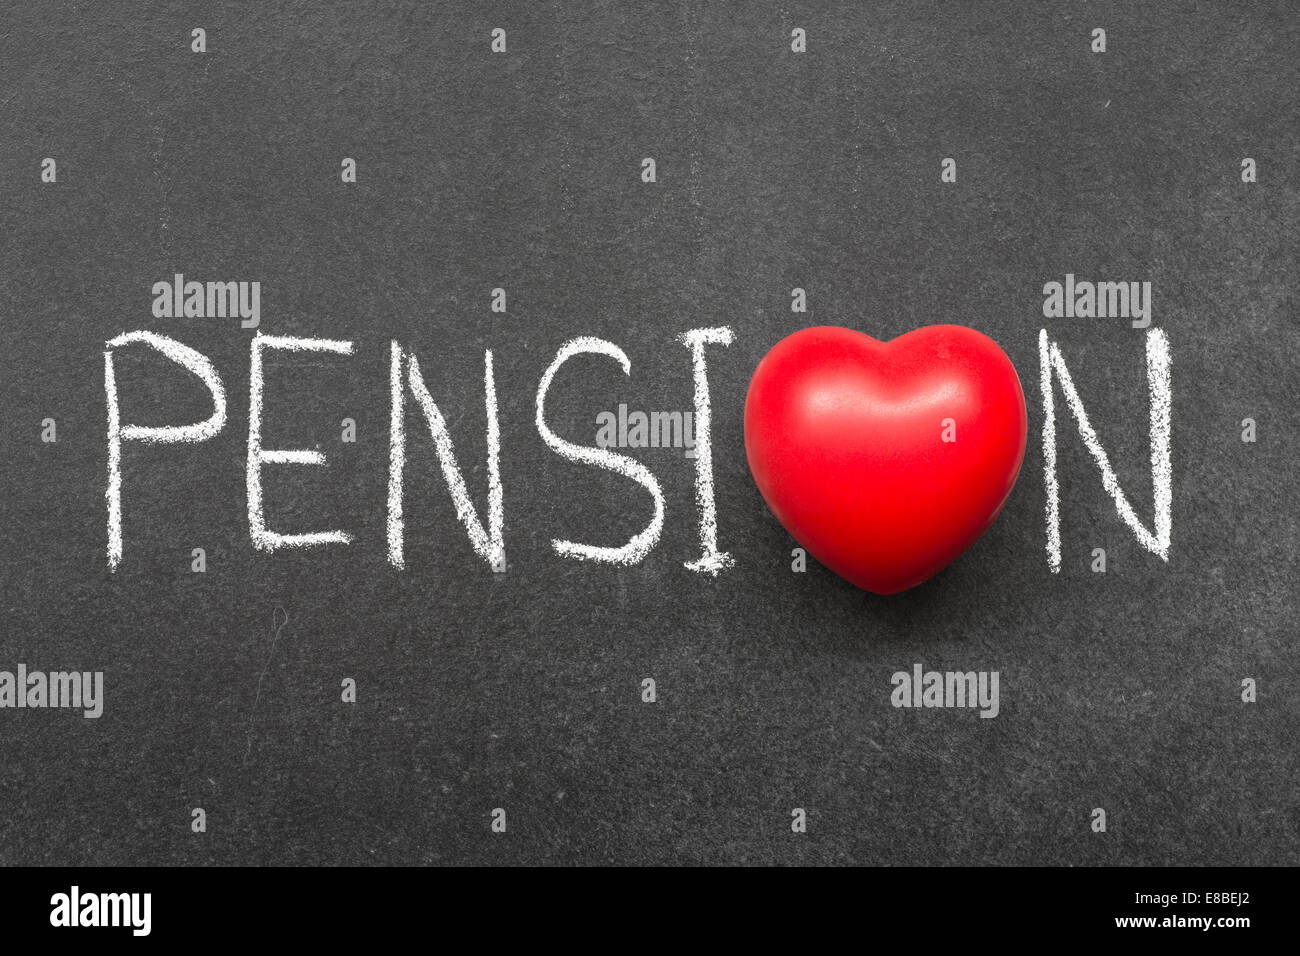 Pension-Wort handschriftlich auf Tafel mit Herzsymbol statt O Stockfoto